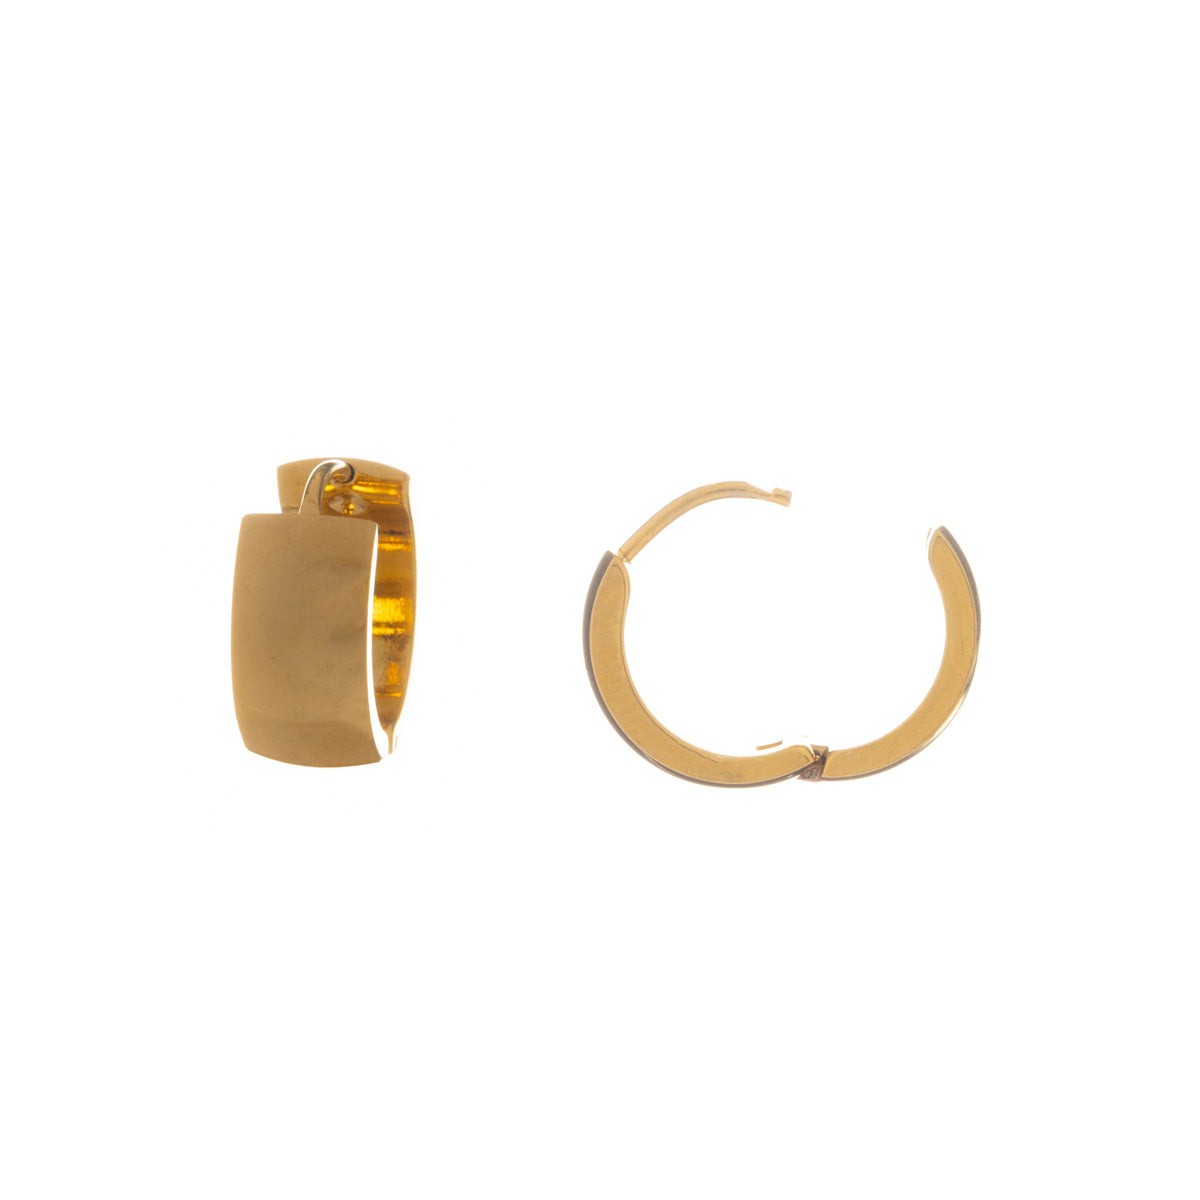 Wide steel ring earrings 1,6cm